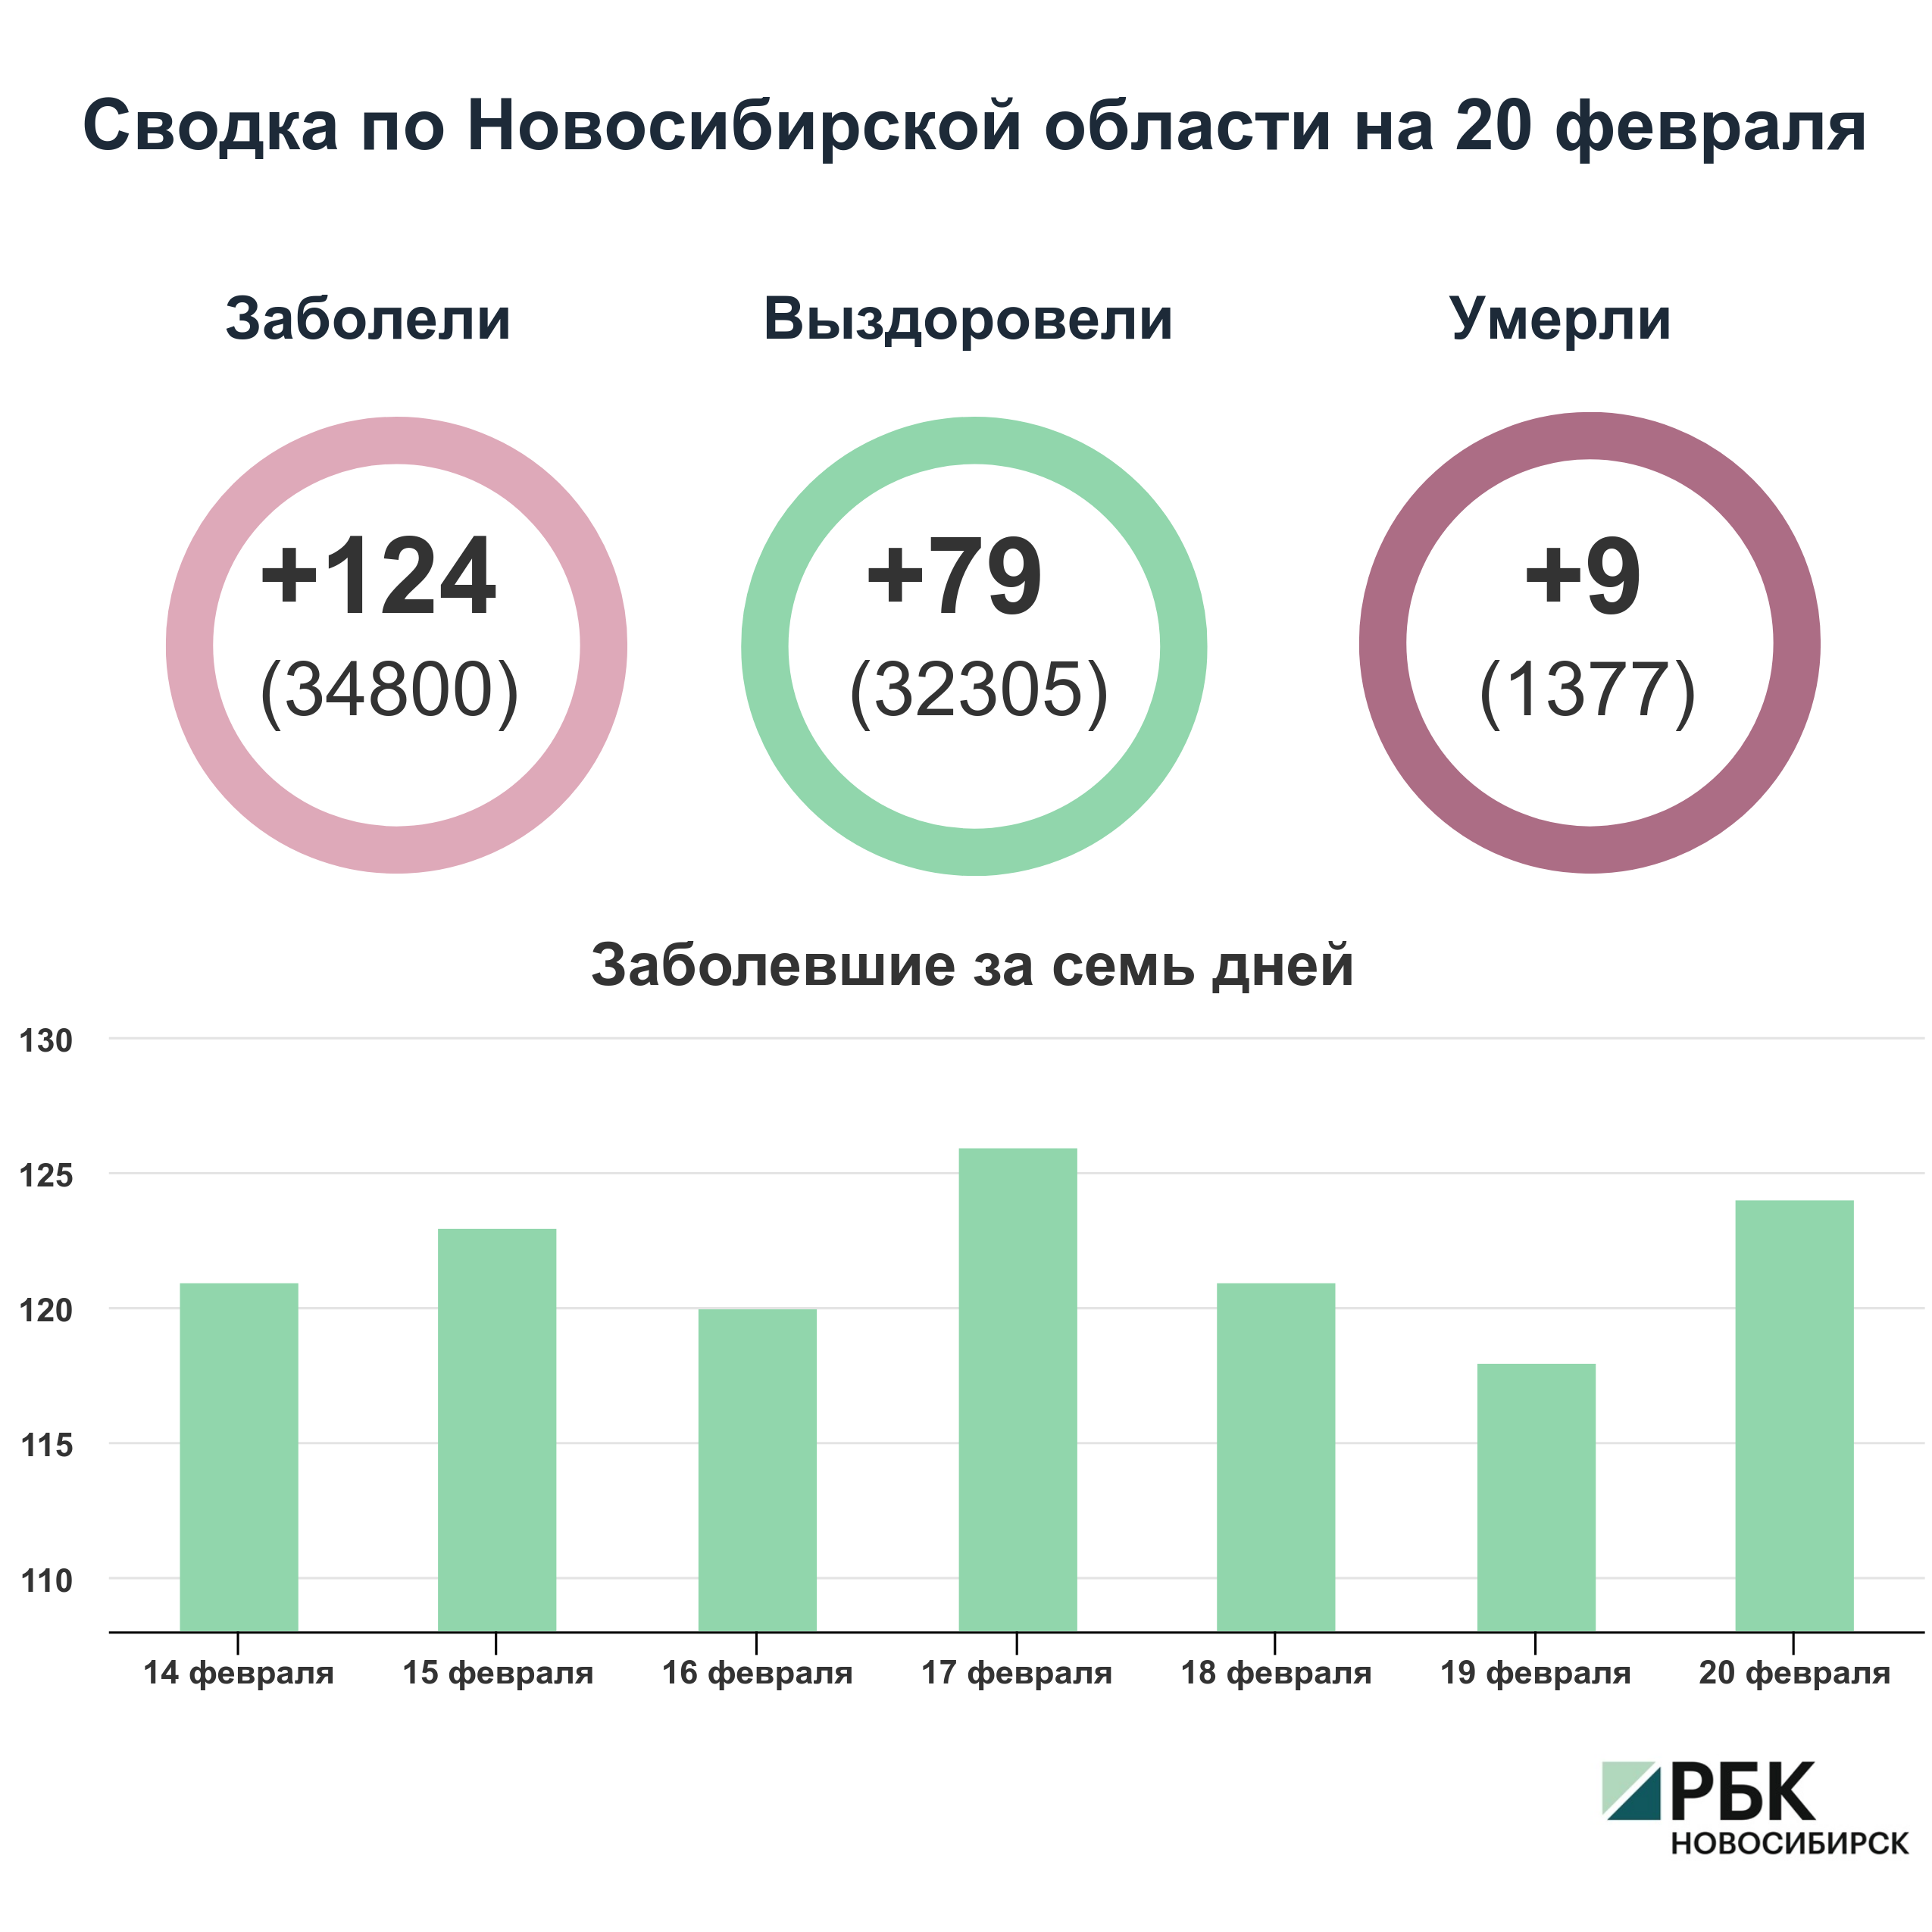 Коронавирус в Новосибирске: сводка на 20 февраля